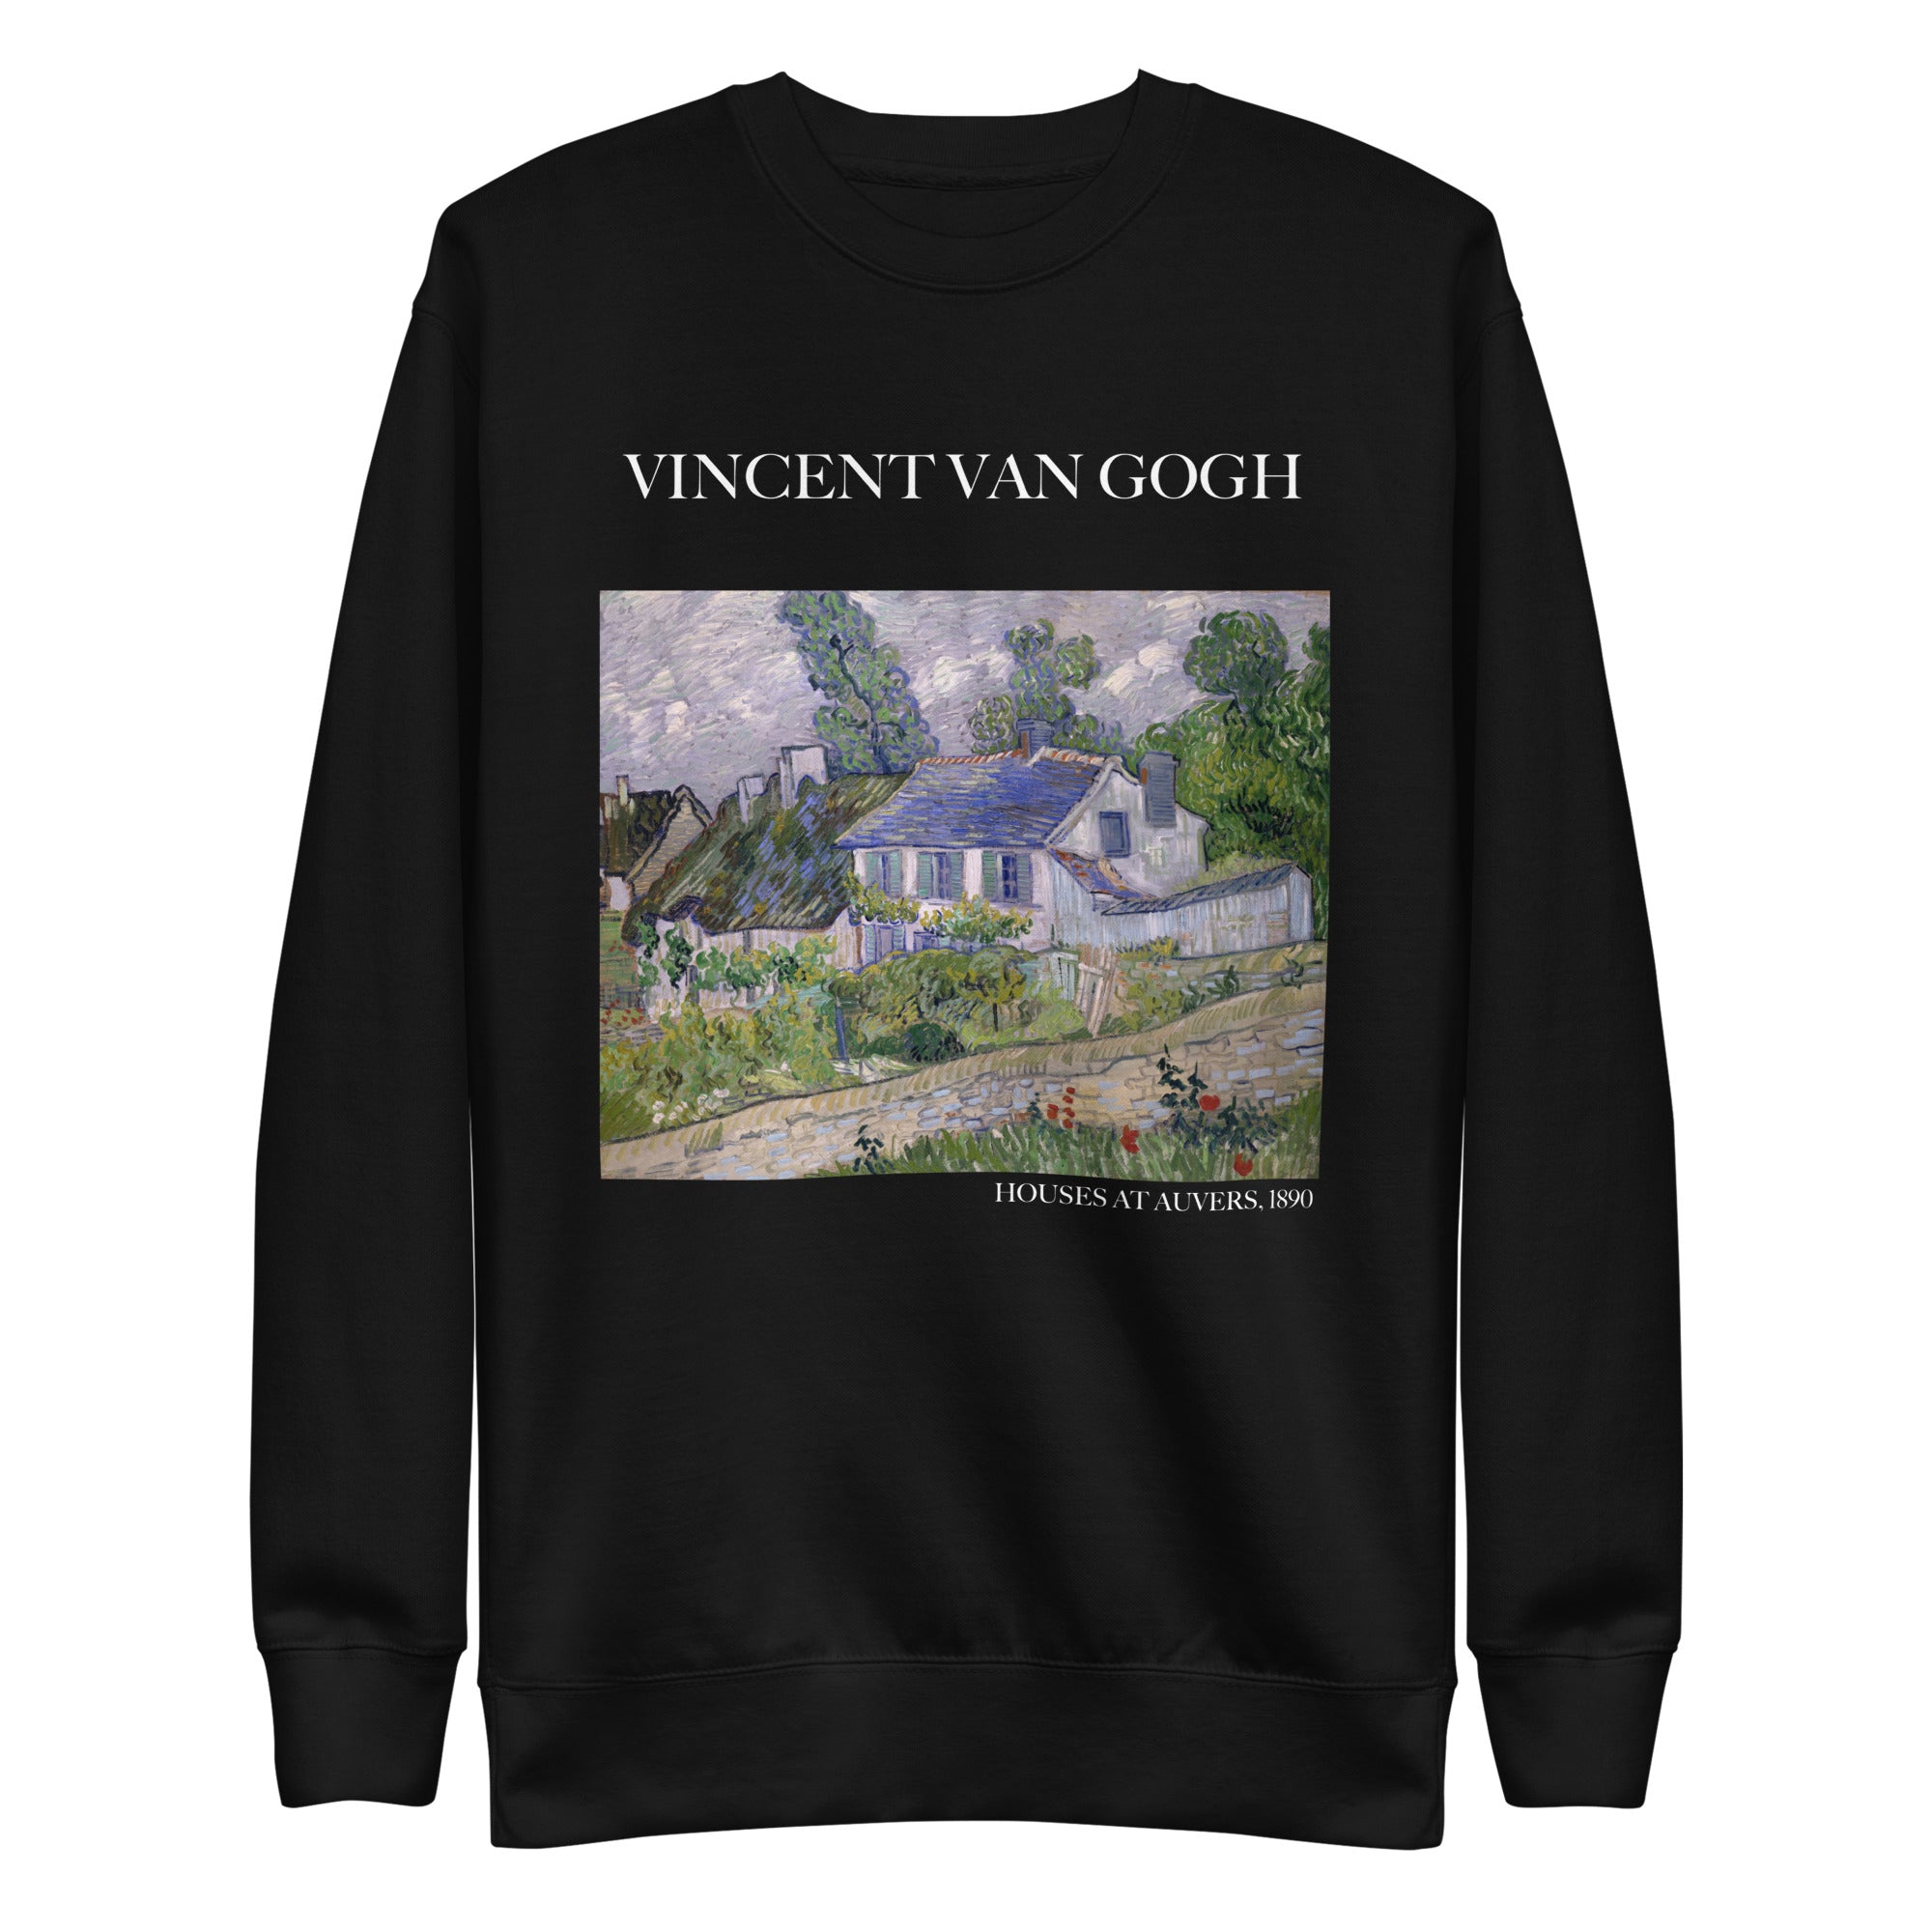 Vincent van Gogh 'Houses at Auvers' Famous Painting Sweatshirt | Unisex Premium Sweatshirt